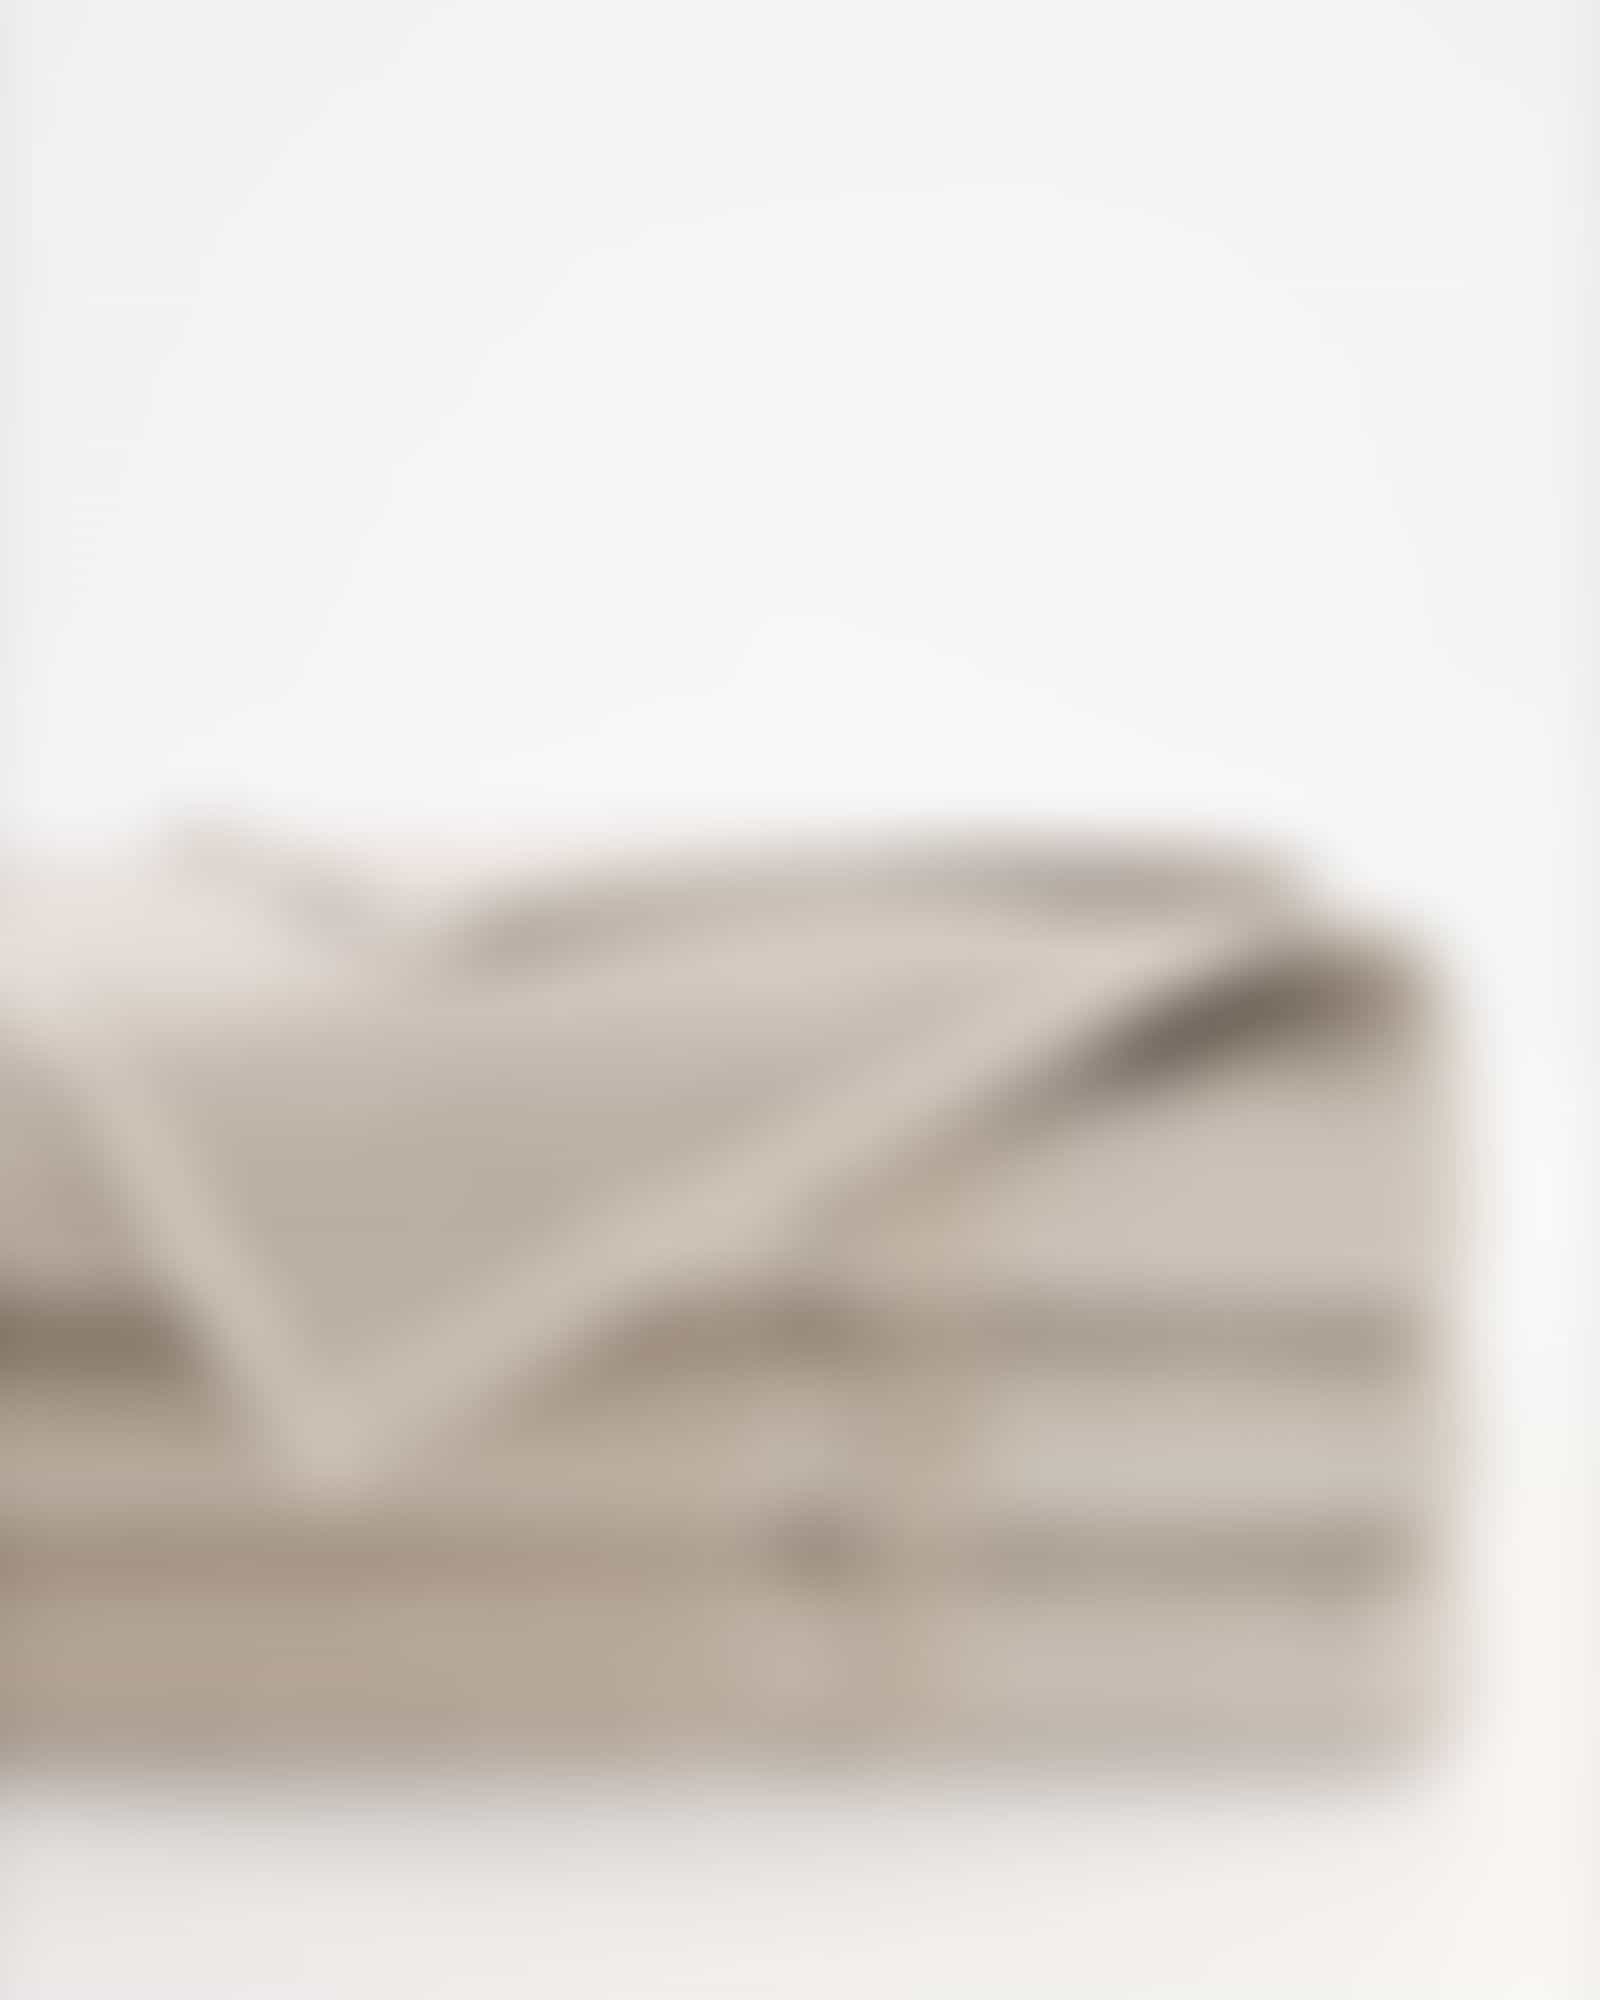 Möve Handtücher Wellbeing Perlstruktur - Farbe: cashmere - 713 - Handtuch 50x100 cm Detailbild 2